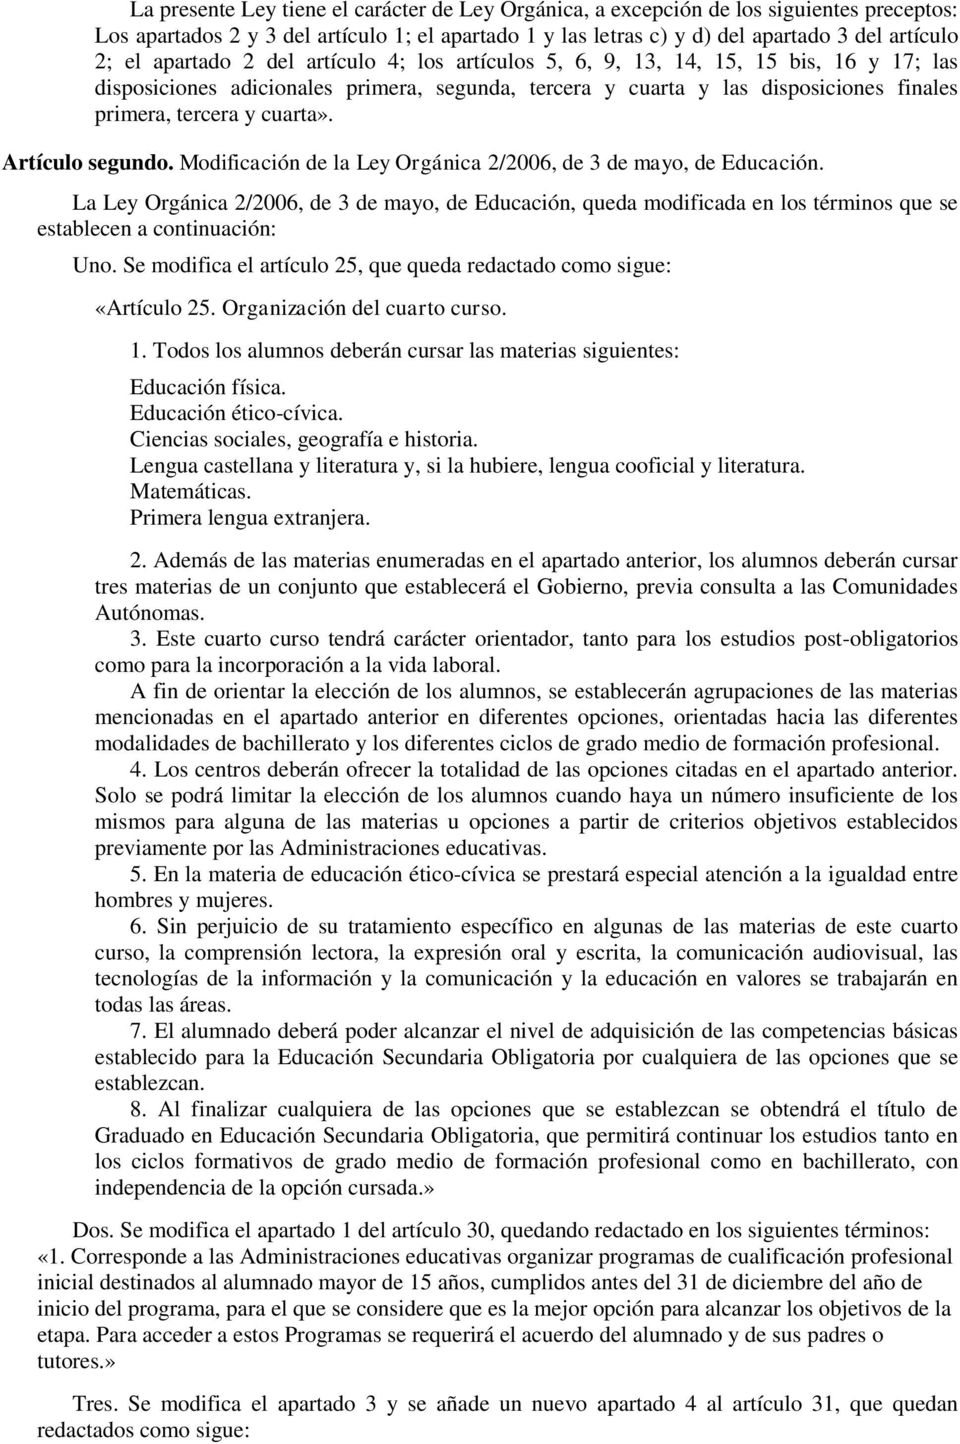 Artículo segundo. Modificación de la Ley Orgánica 2/2006, de 3 de mayo, de Educación.